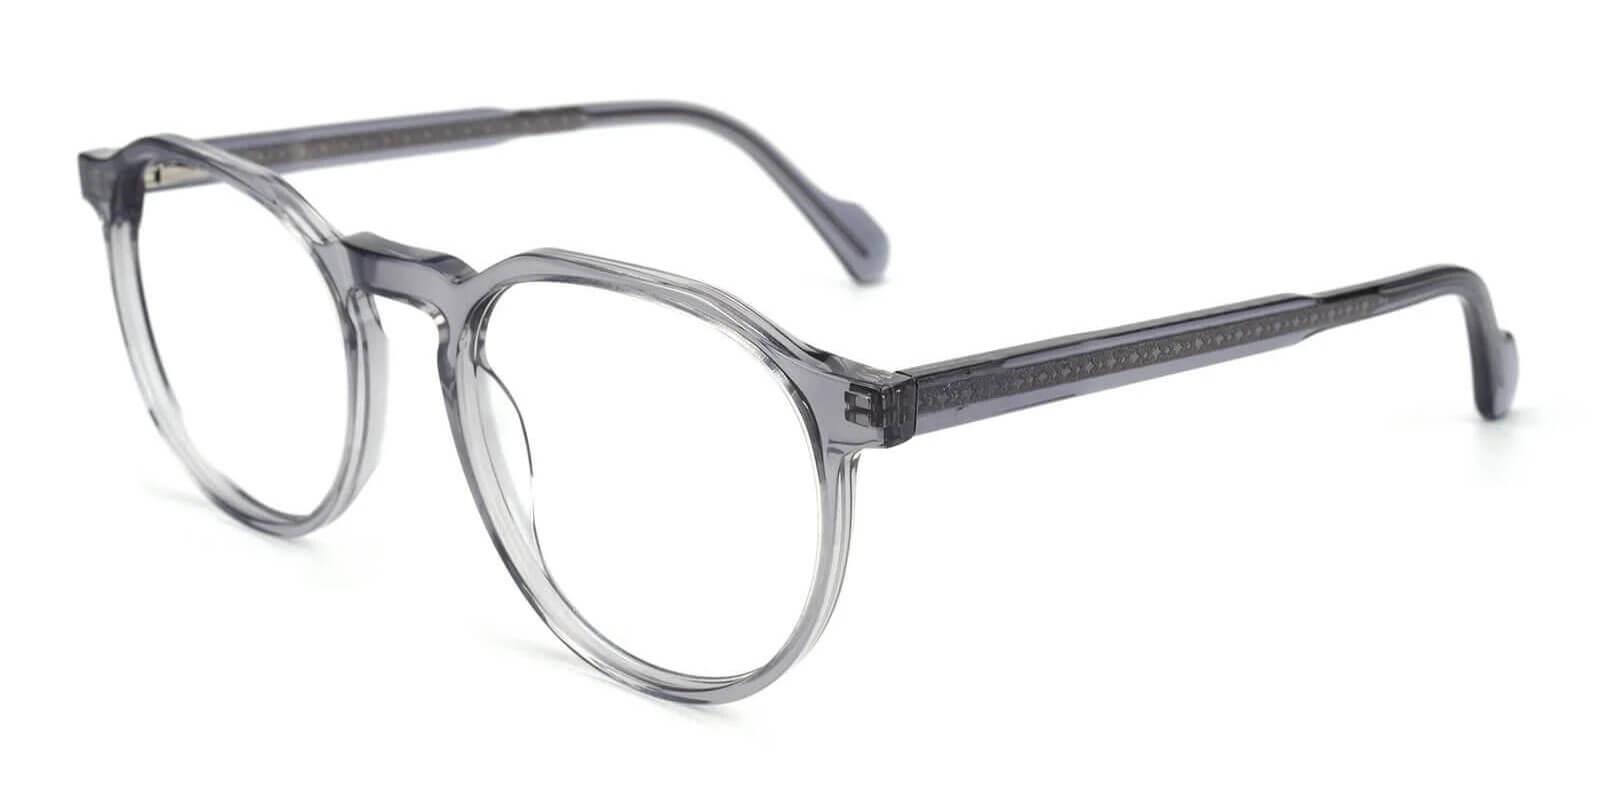 Carnival Gray Acetate Eyeglasses , SpringHinges , UniversalBridgeFit Frames from ABBE Glasses